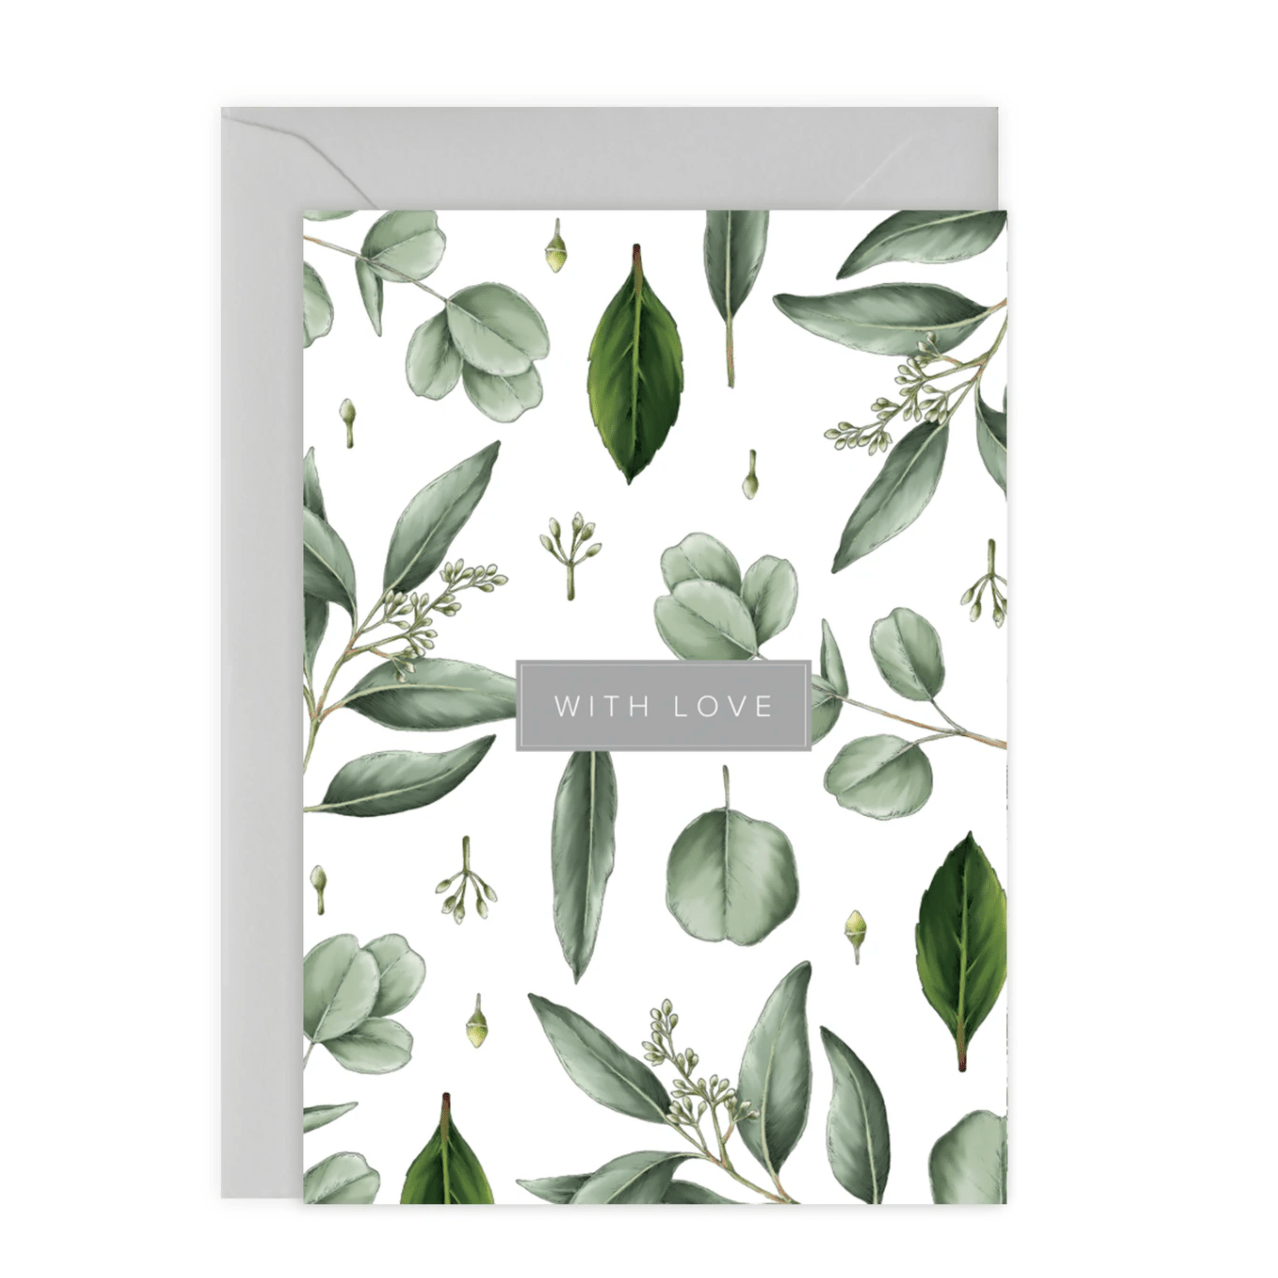 Stylish luxury stationary hand illustrated botanical design greenery with love greetings card Catherine Lewis UK